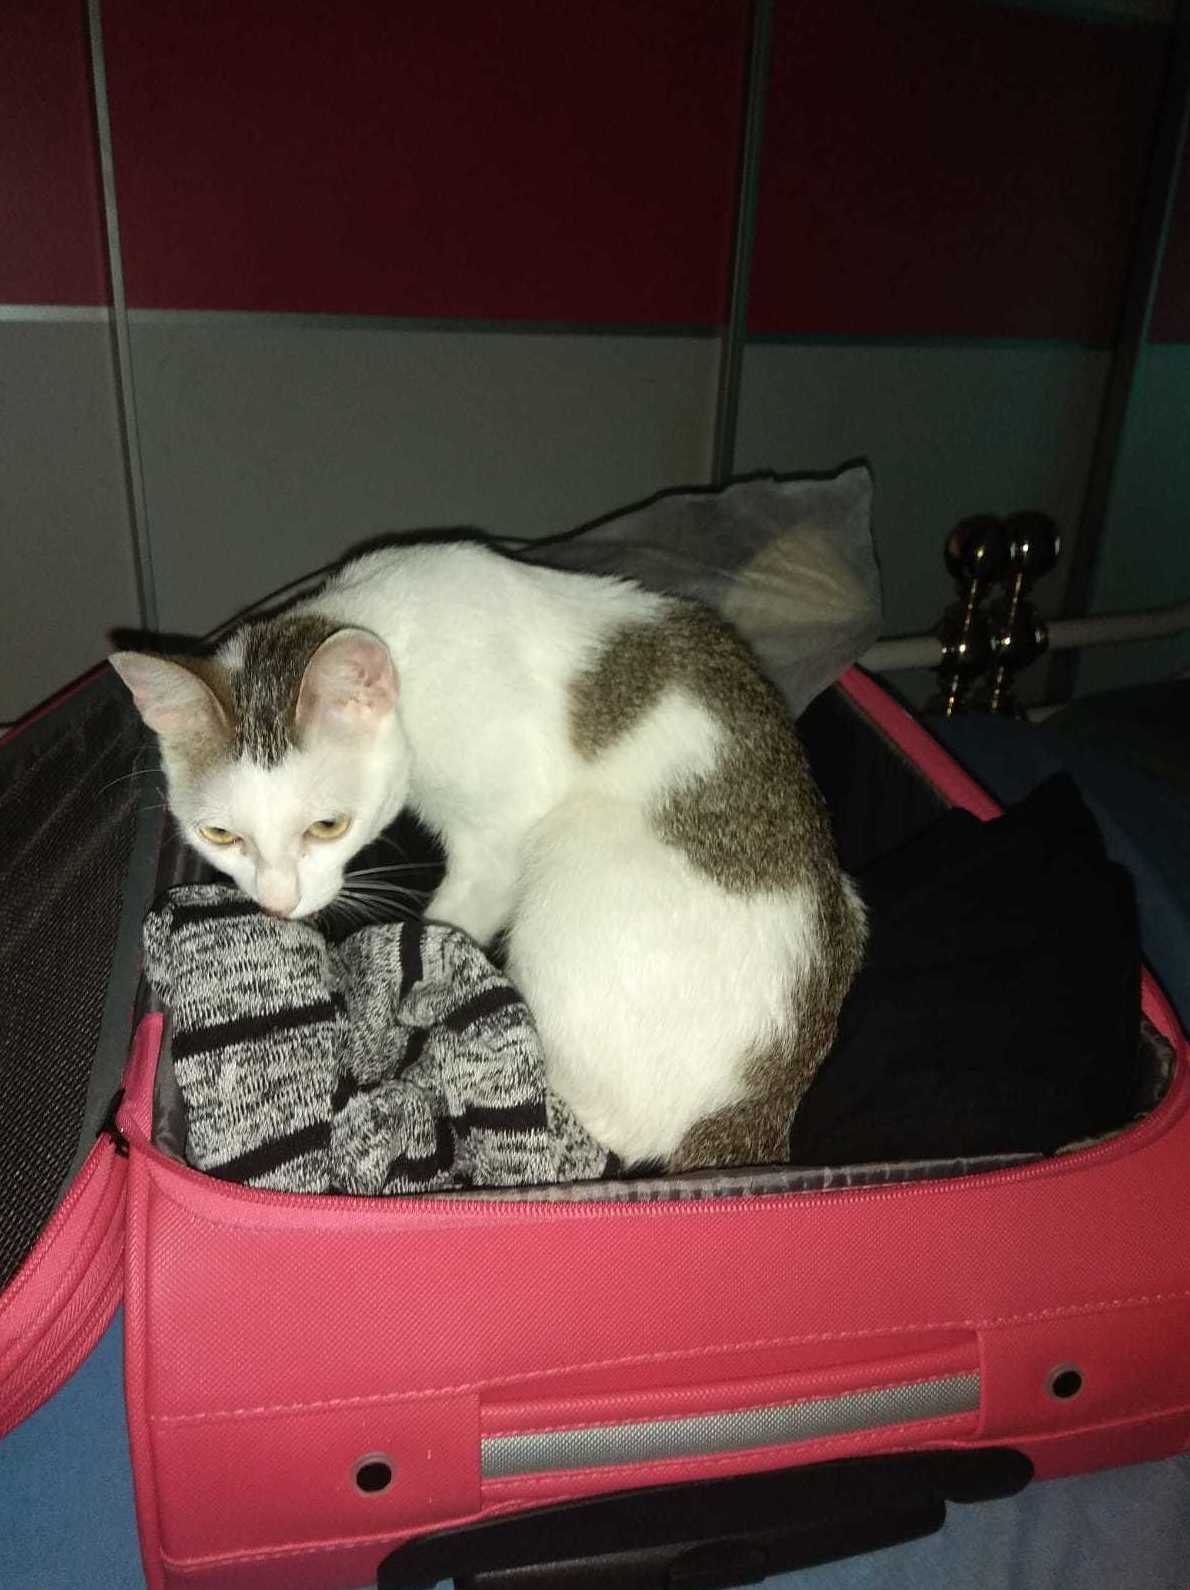 Frozen gata jugando en la maleta de su dueña que tiene forma de caja y les encanta pancreáticos puedes poner gatito vomitador utilizando comedero de glotones